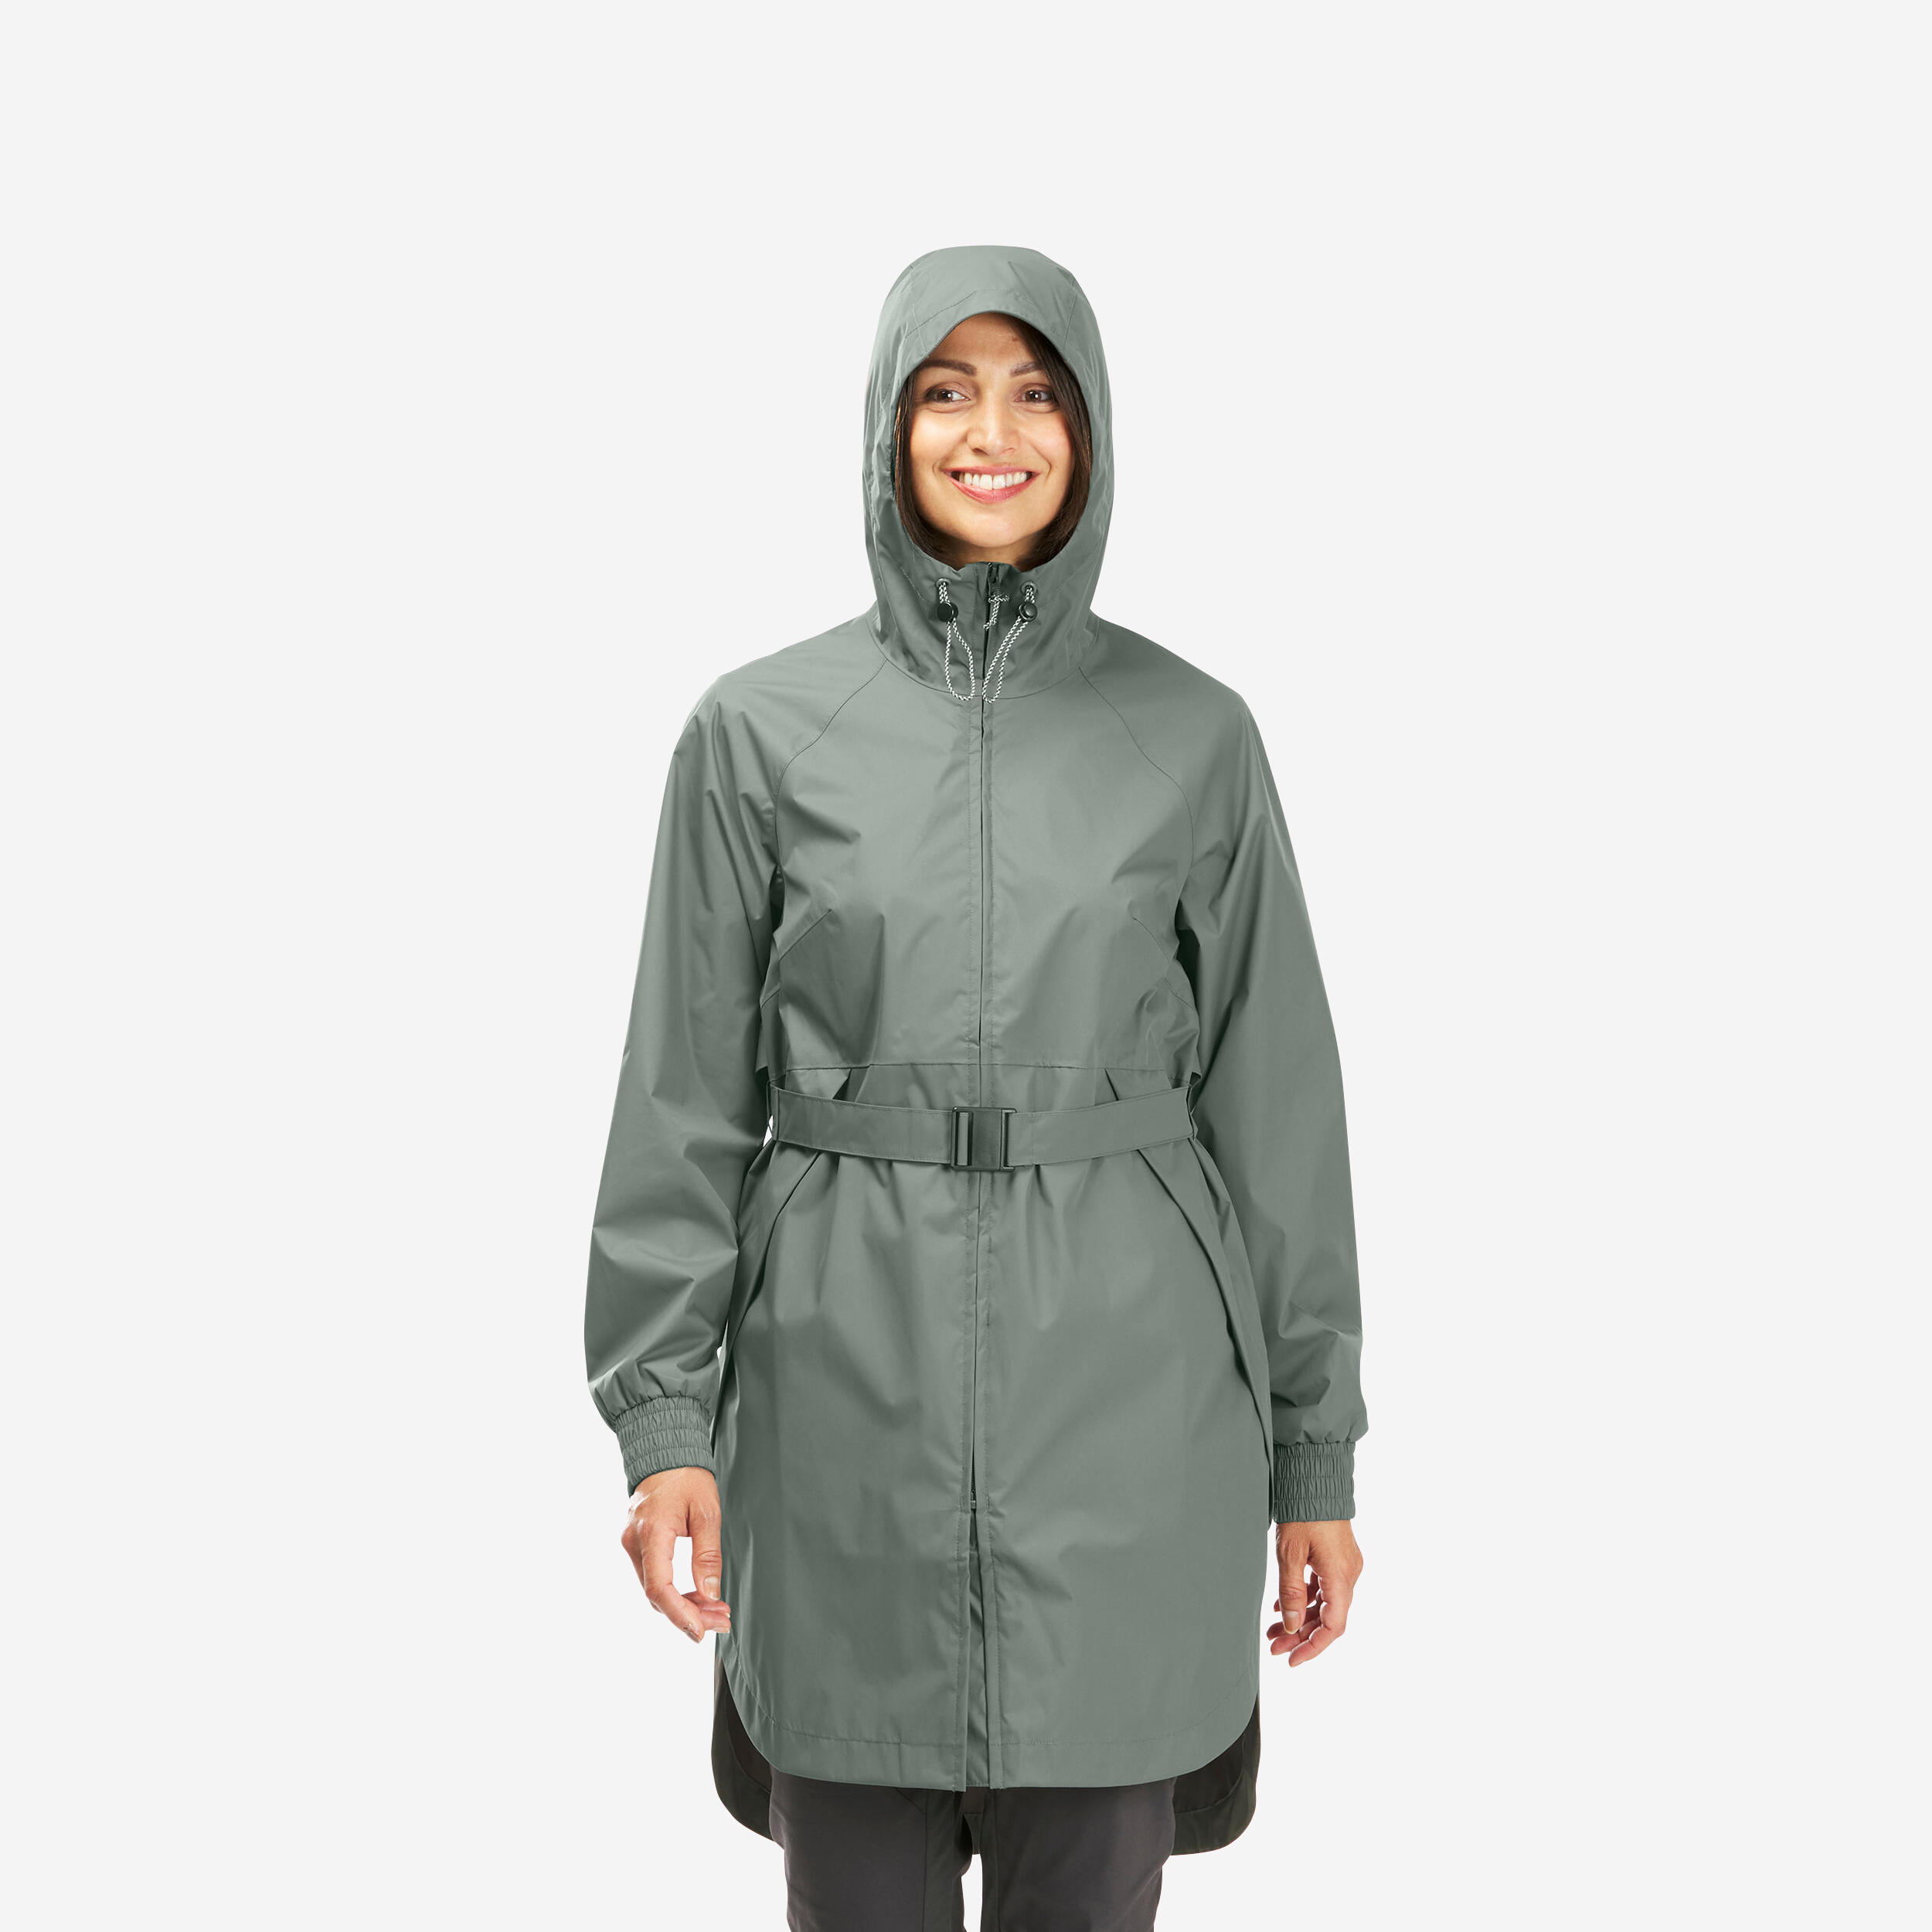 Women’s Hiking Jacket - Raincut Khaki - QUECHUA